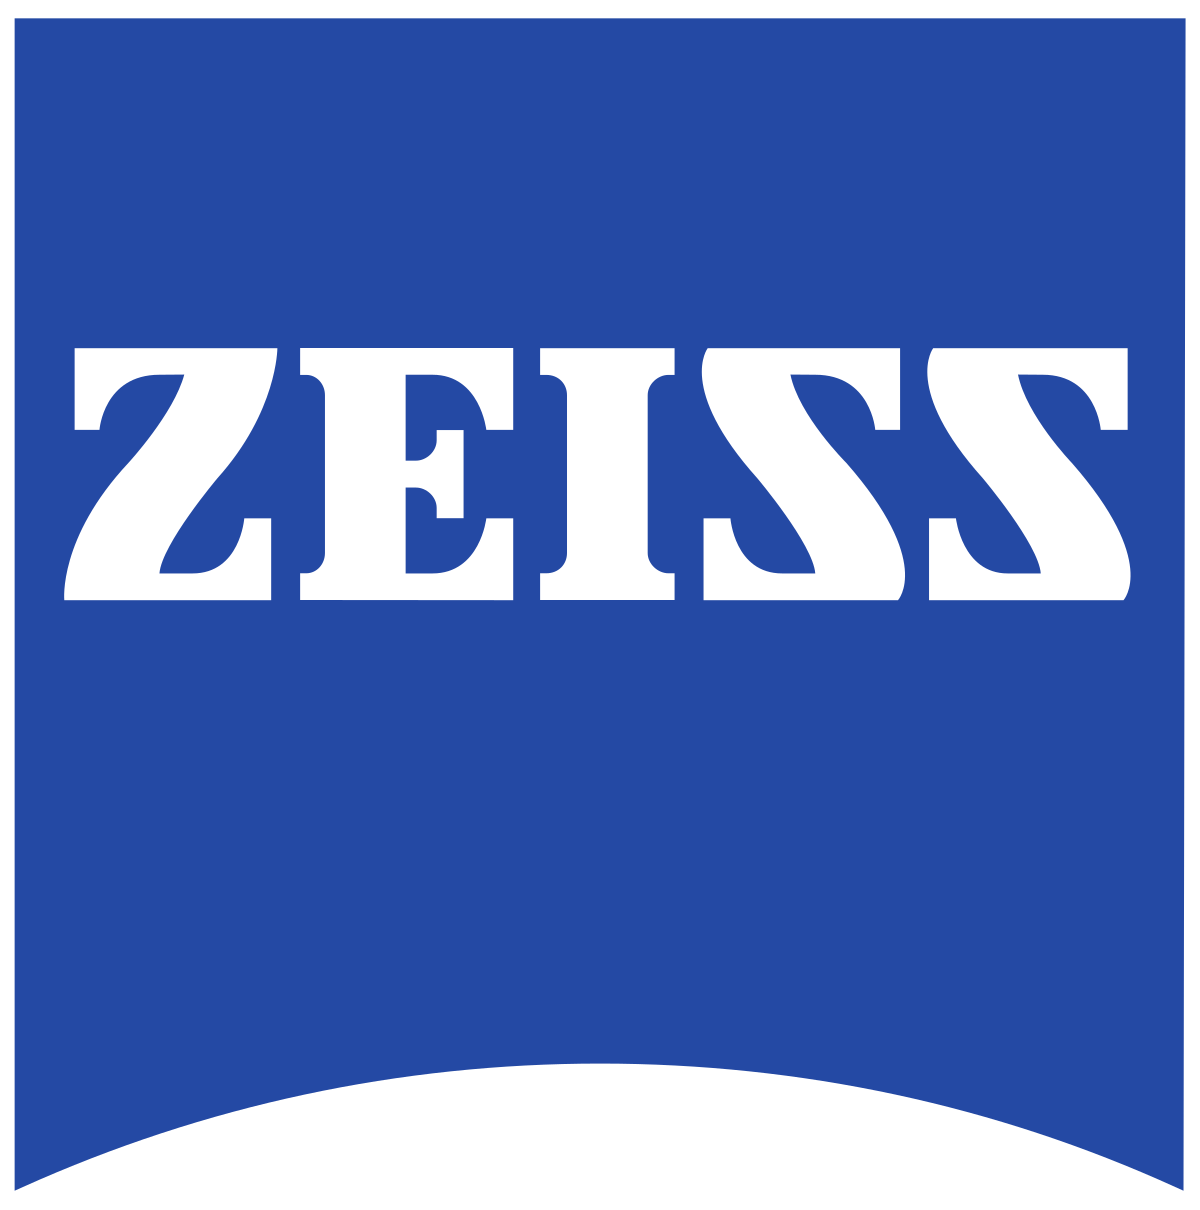 ZEISS catalogo online e-commerce training platform